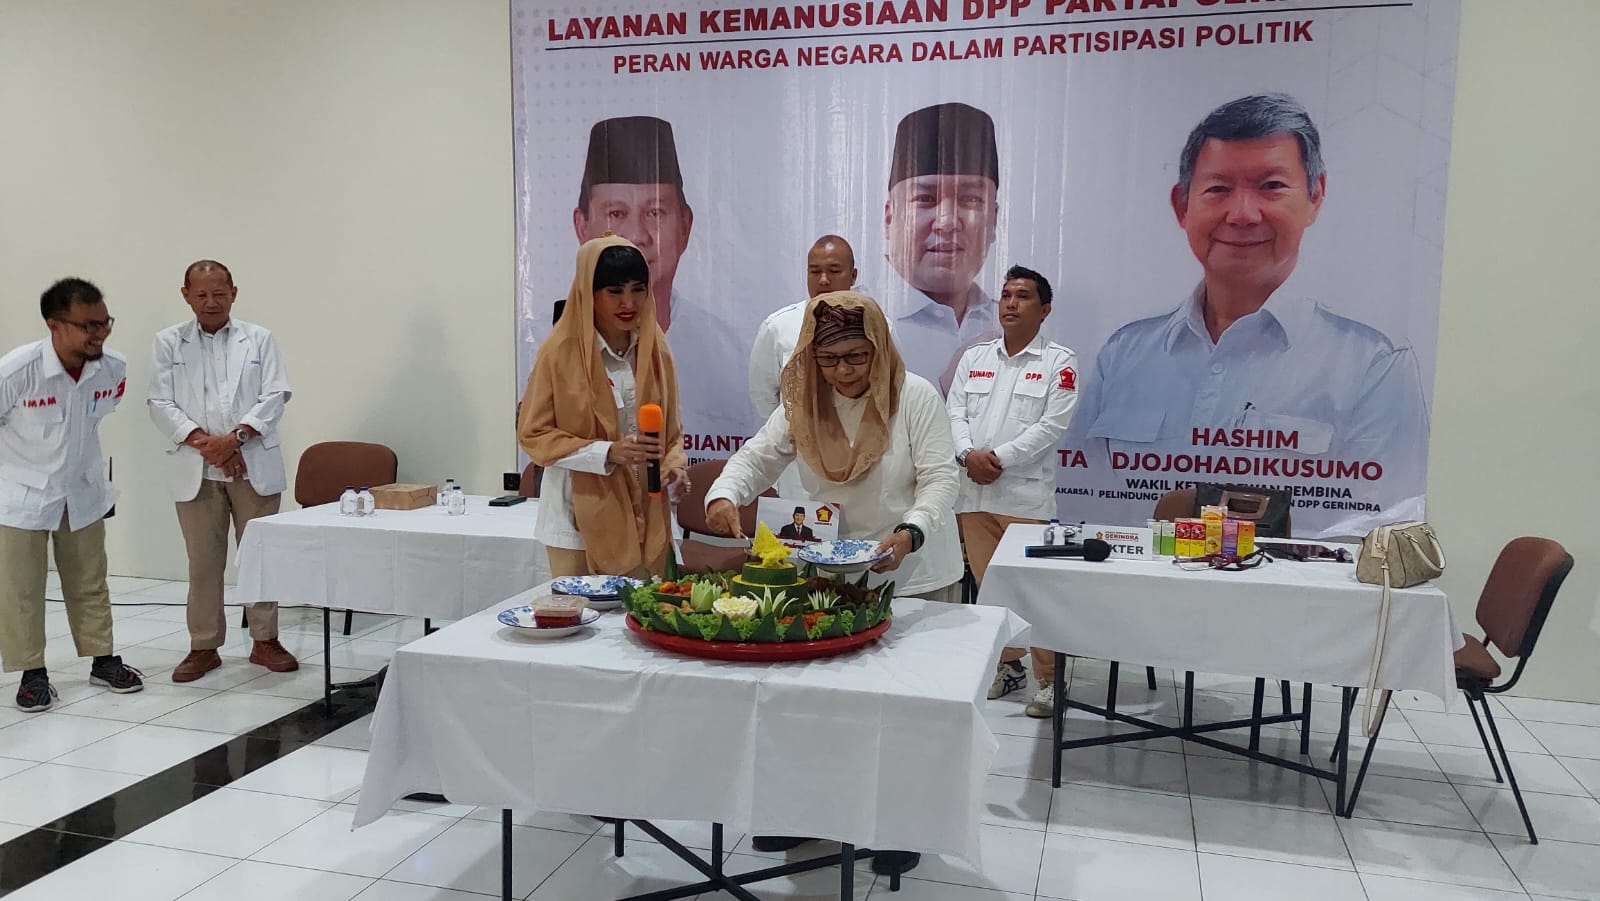 Layanan Kemanusiaa DPP Gerindra Gelar Pengobatan Gratis dan Syukuran HUT Prabowo